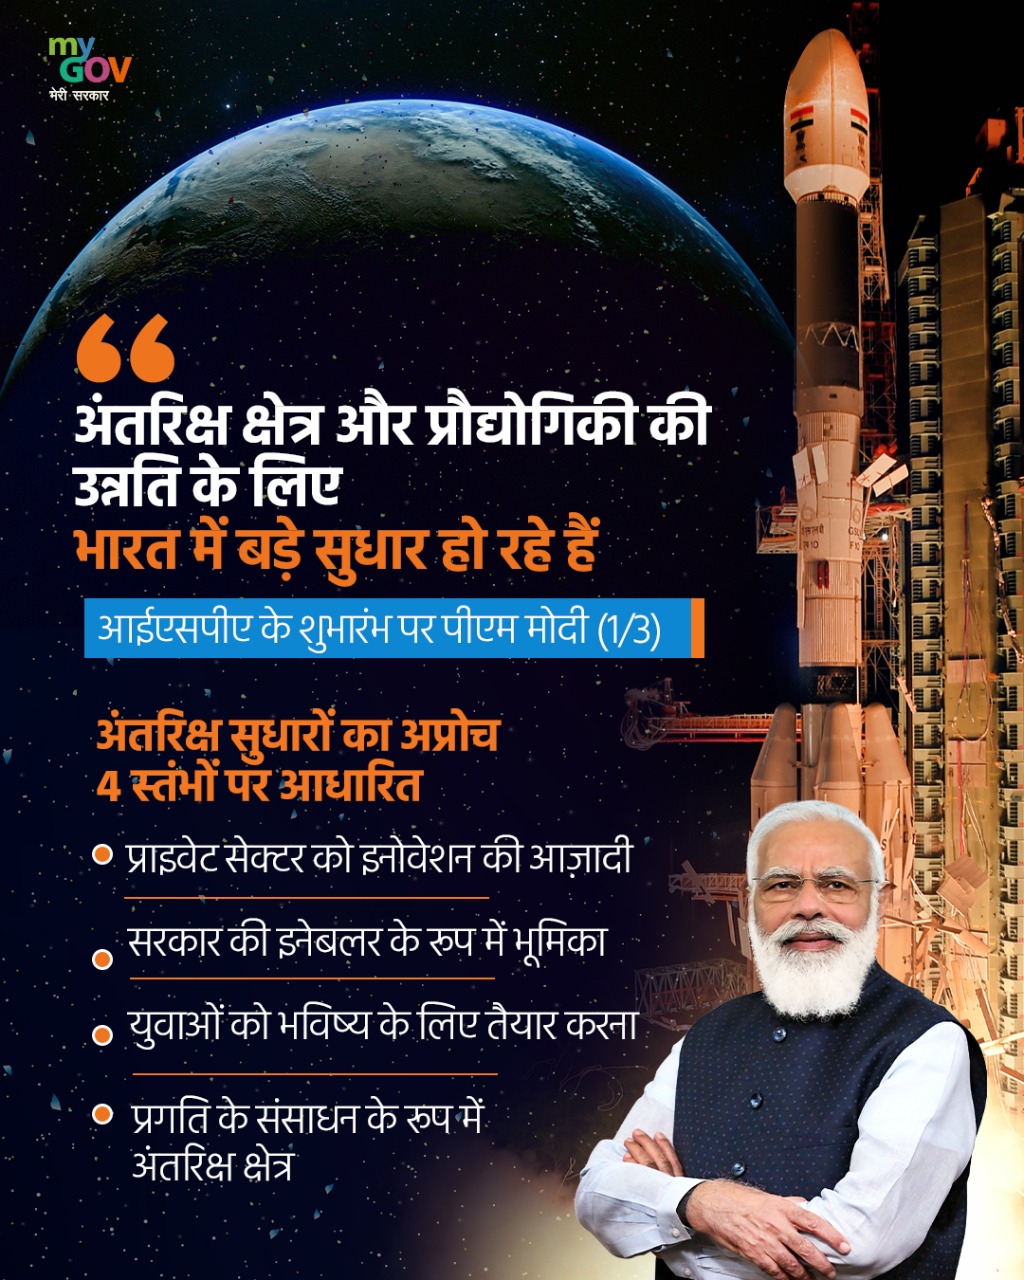 प्रधानमंत्री ने भारतीय अंतरिक्ष संघ का शुभारंभ किया; आत्मनिर्भर भारत अभियान सिर्फ एक विजन नहीं है बल्कि एक सुविचारित, सुनियोजित, एकीकृत आर्थिक रणनीति है